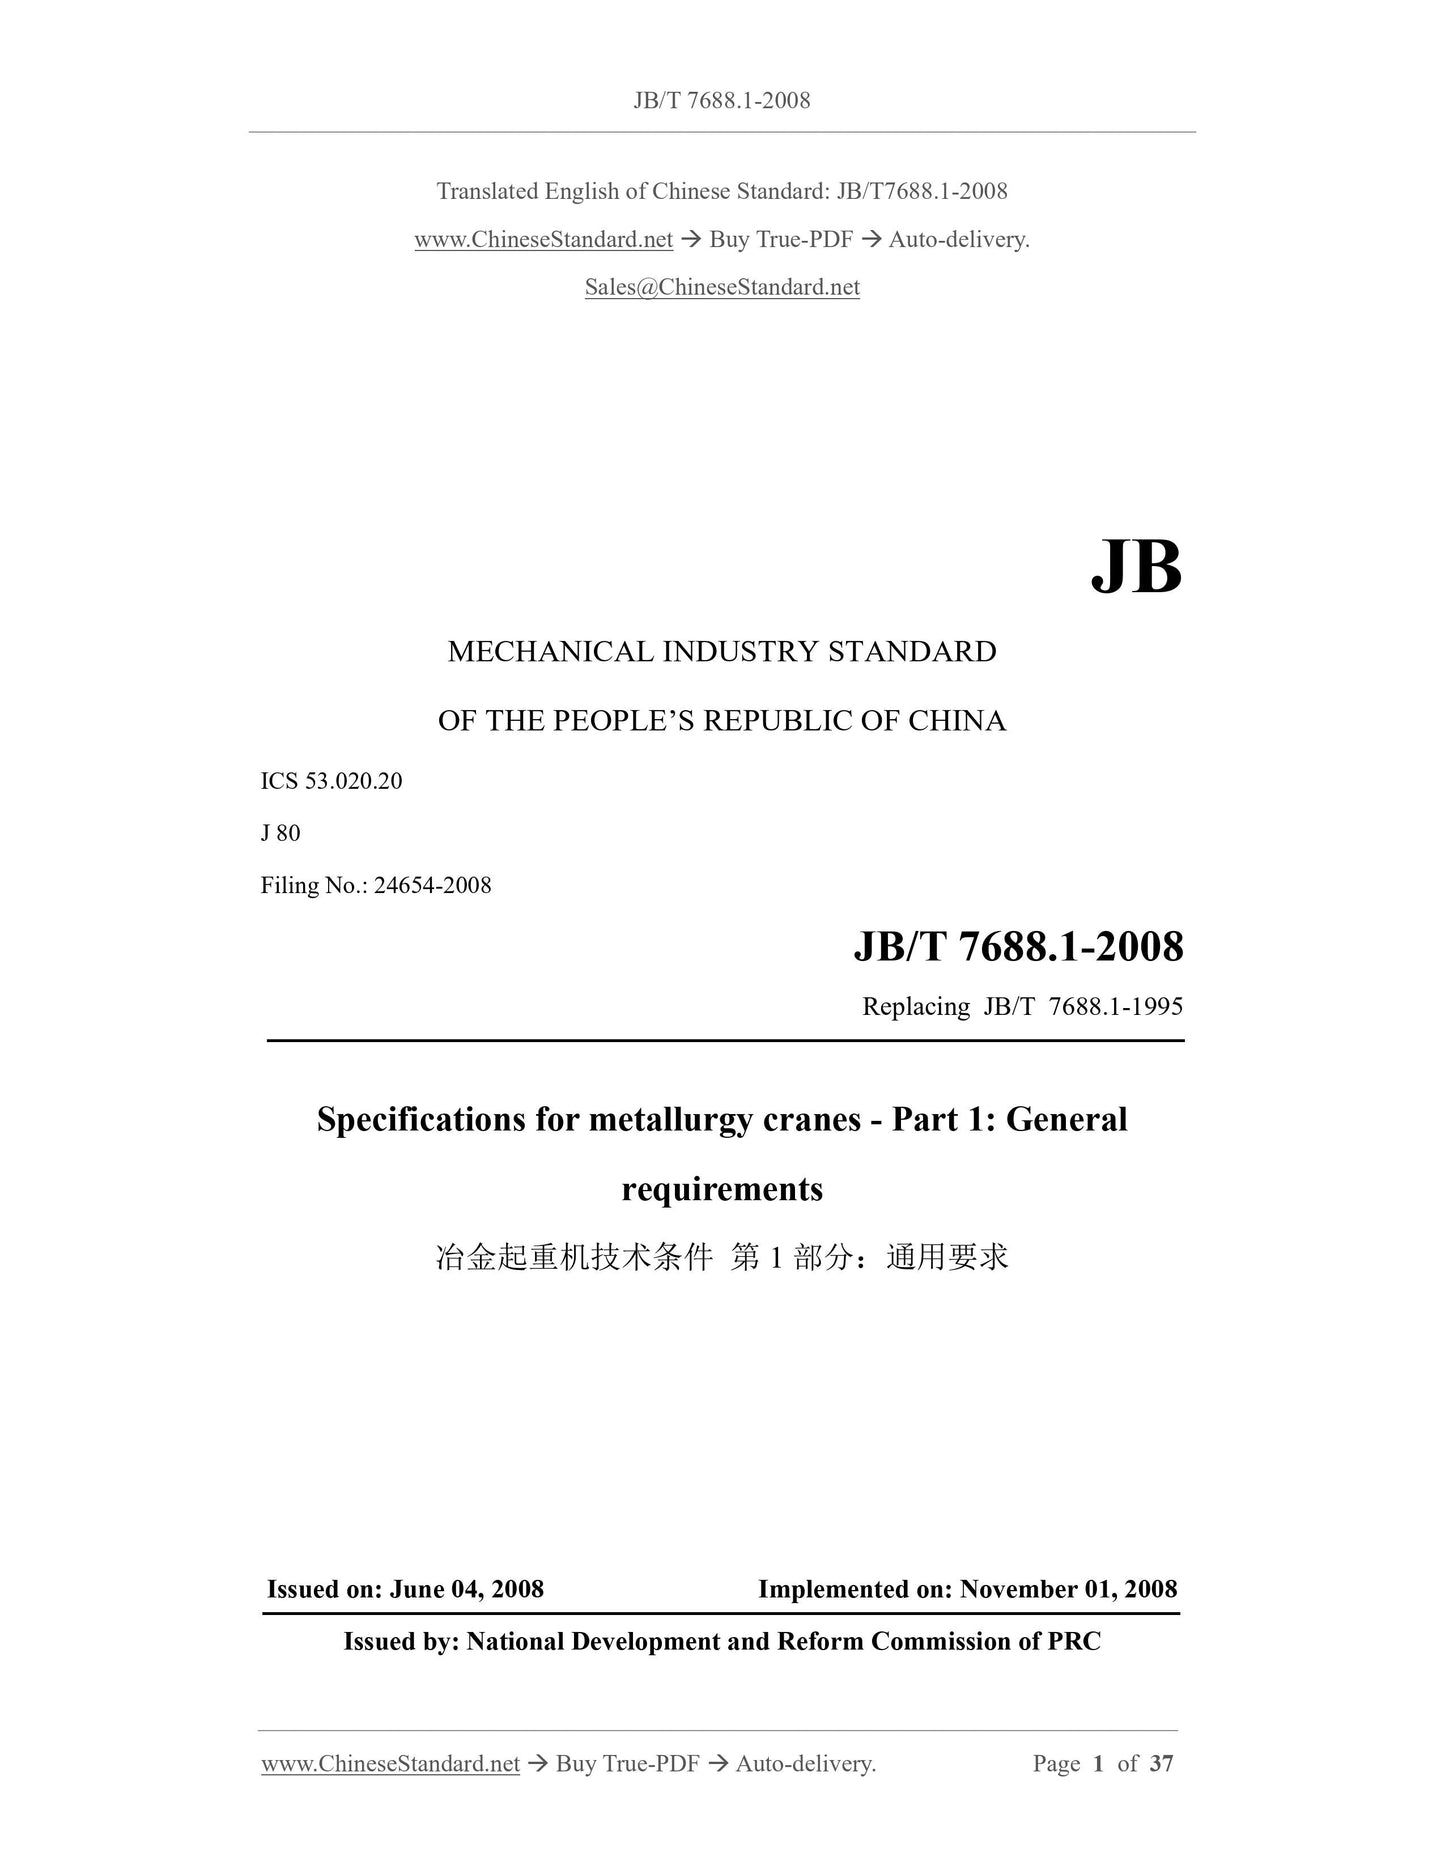 JB/T 7688.1-2008 Page 1